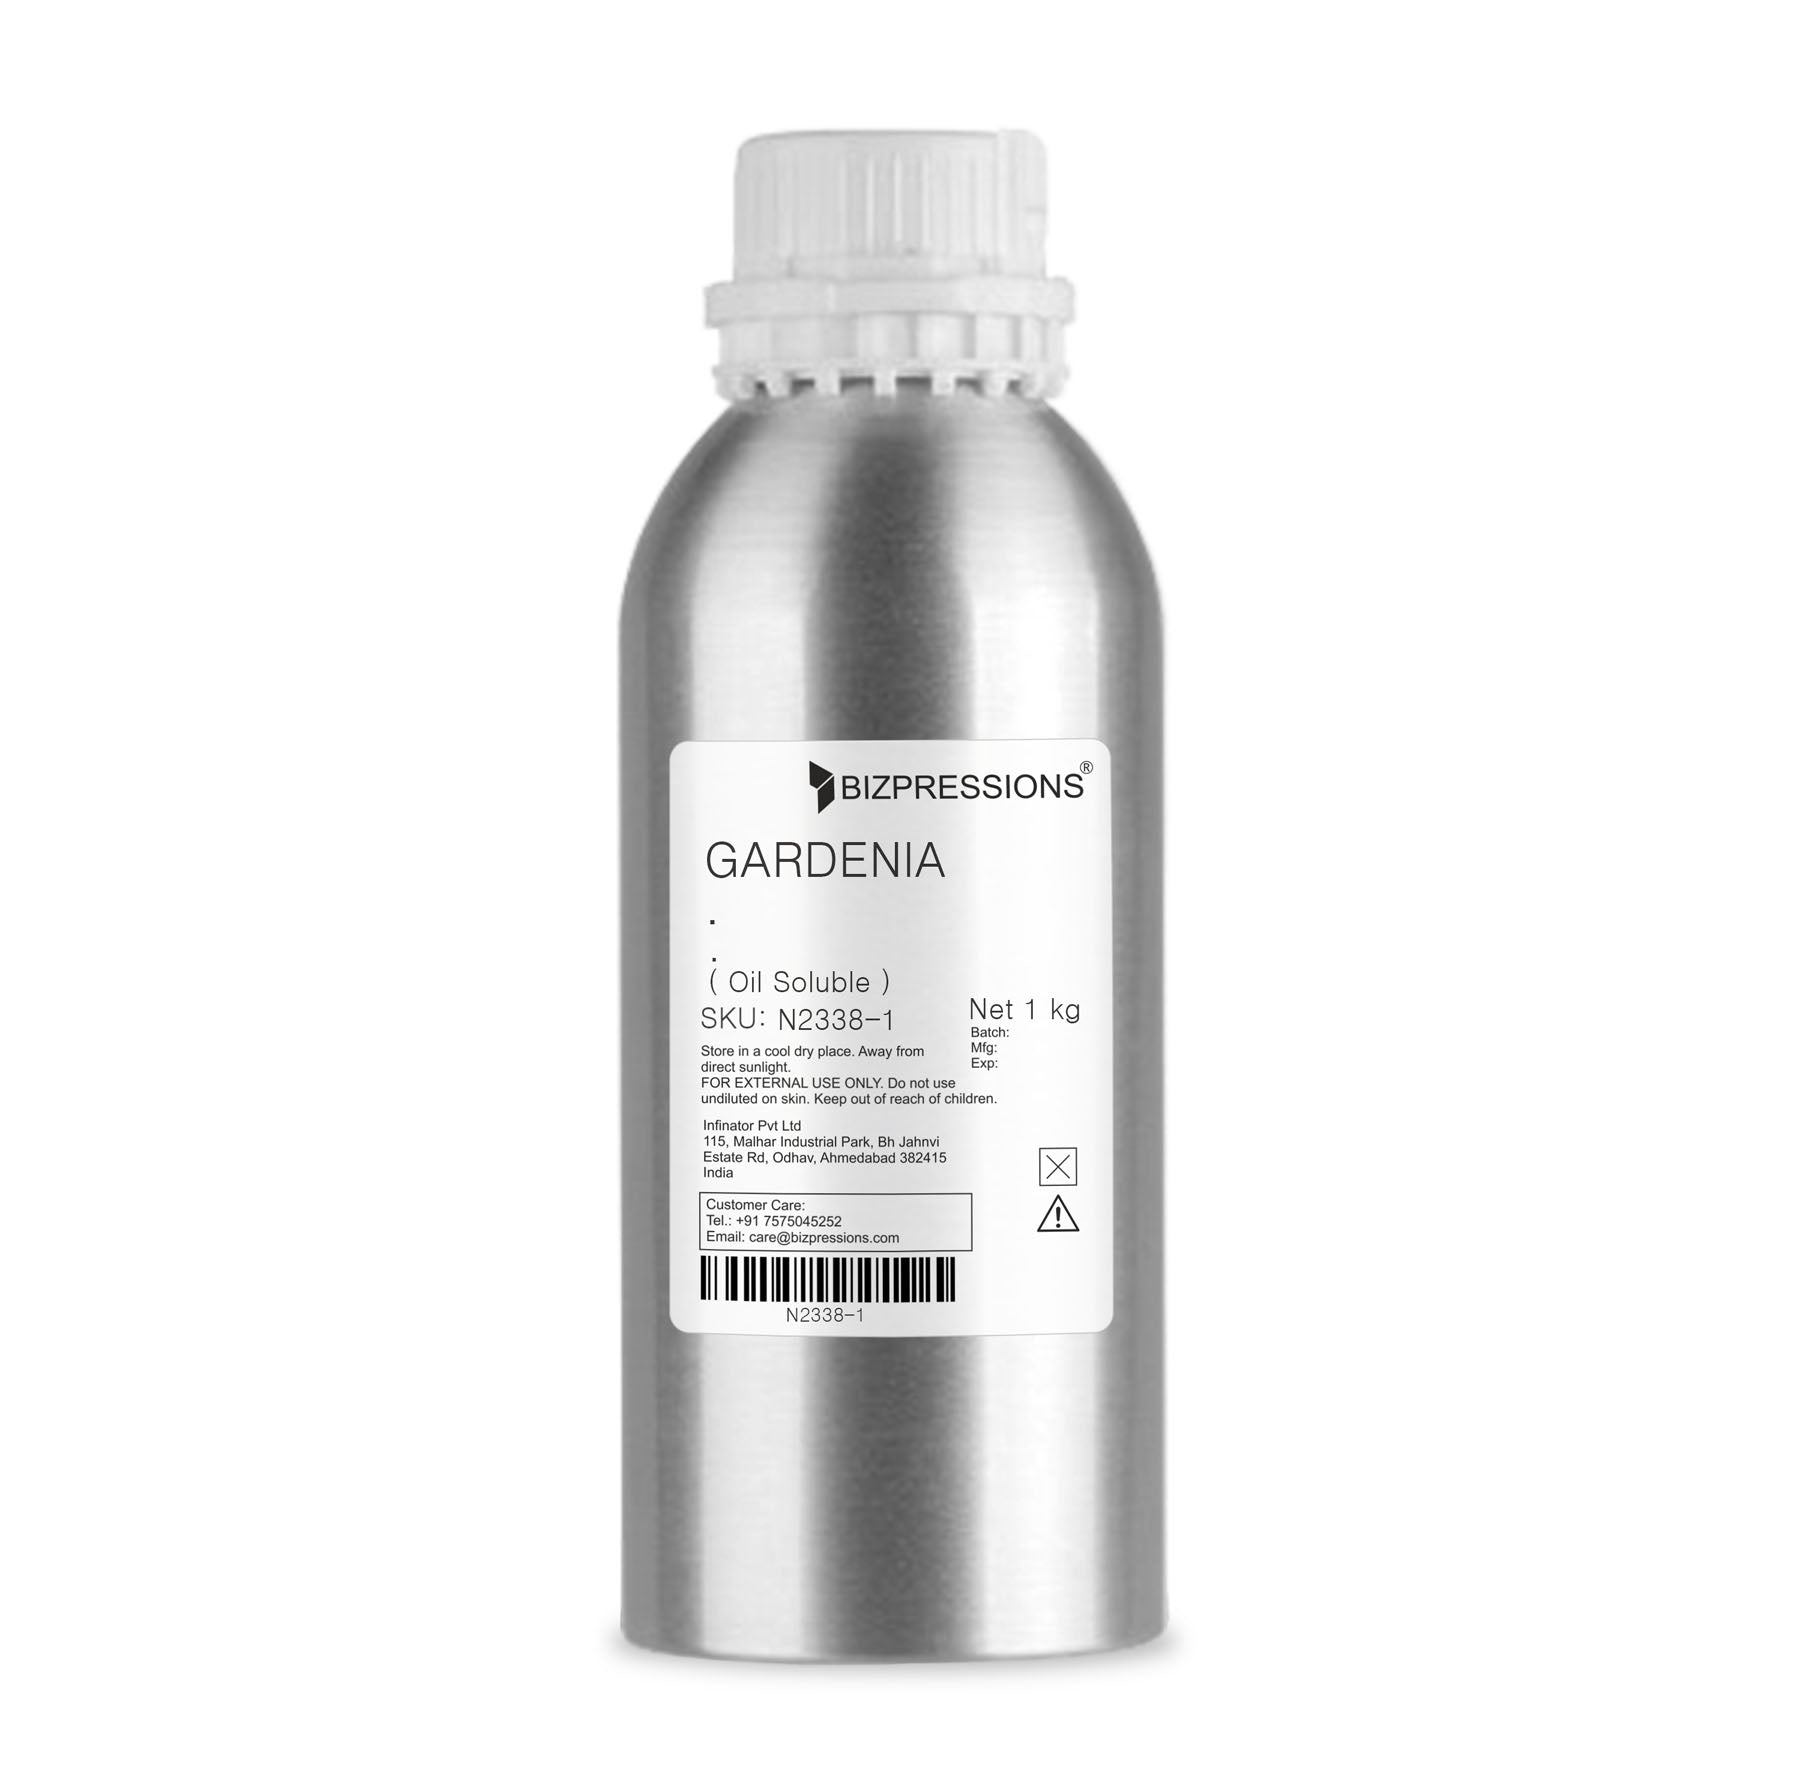 GARDENIA - Fragrance ( Oil Soluble ) - 1 kg